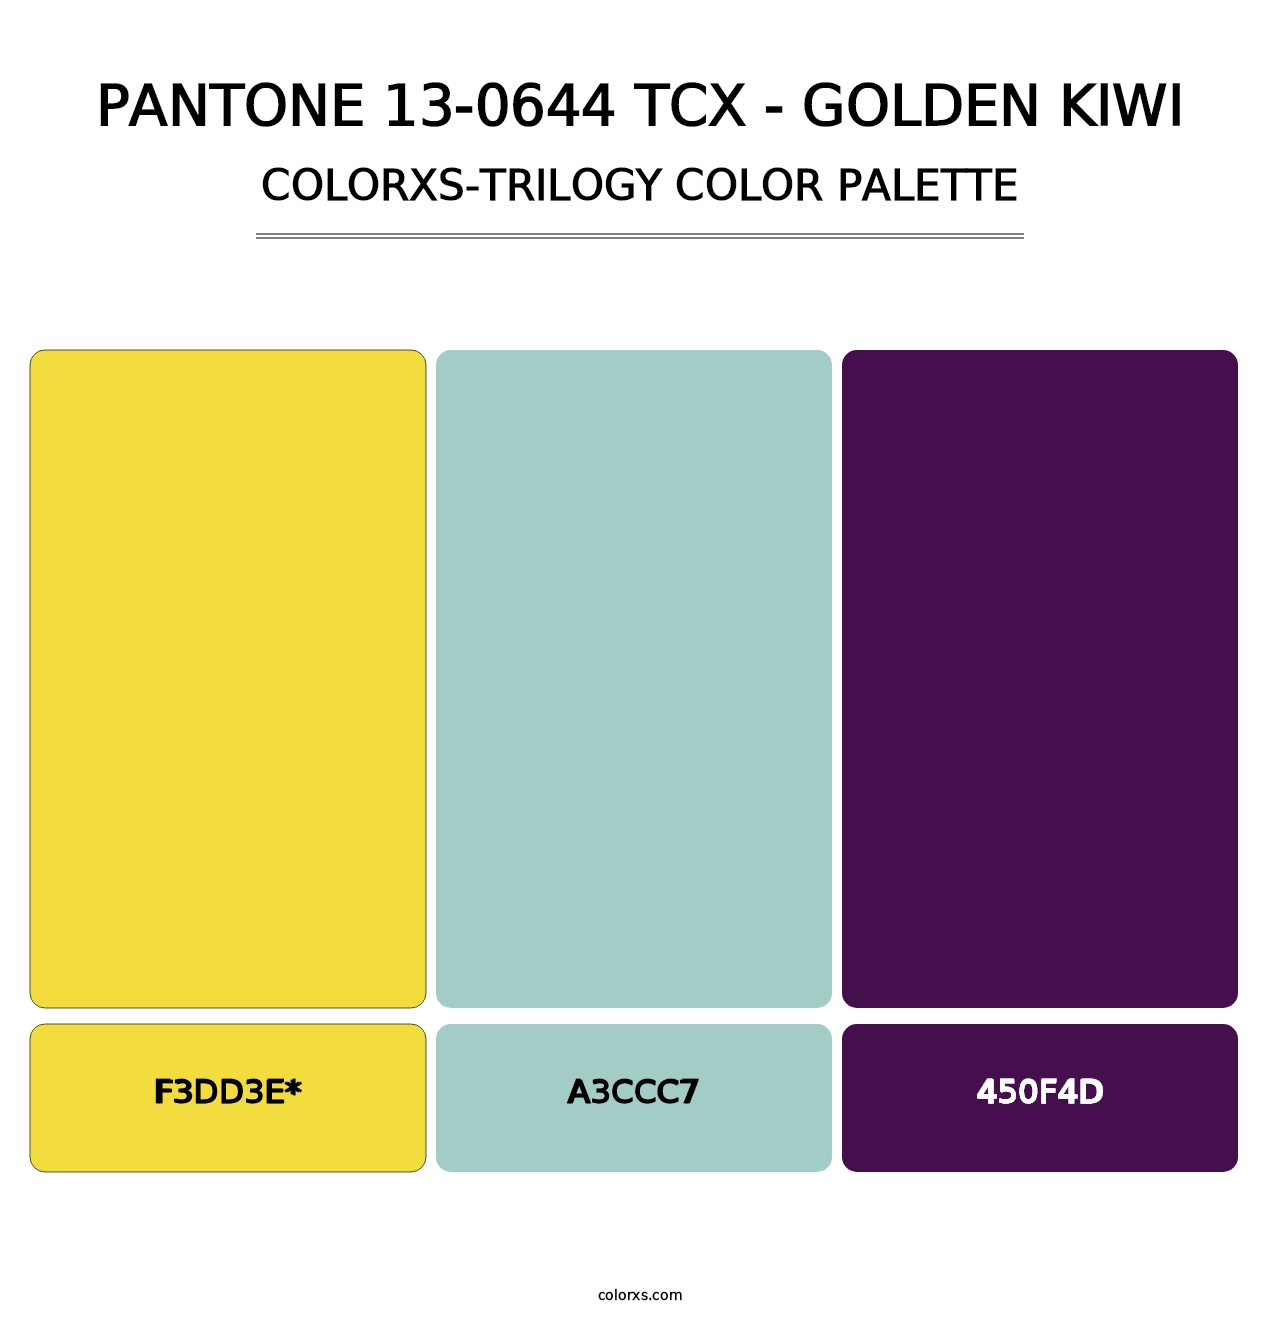 PANTONE 13-0644 TCX - Golden Kiwi - Colorxs Trilogy Palette